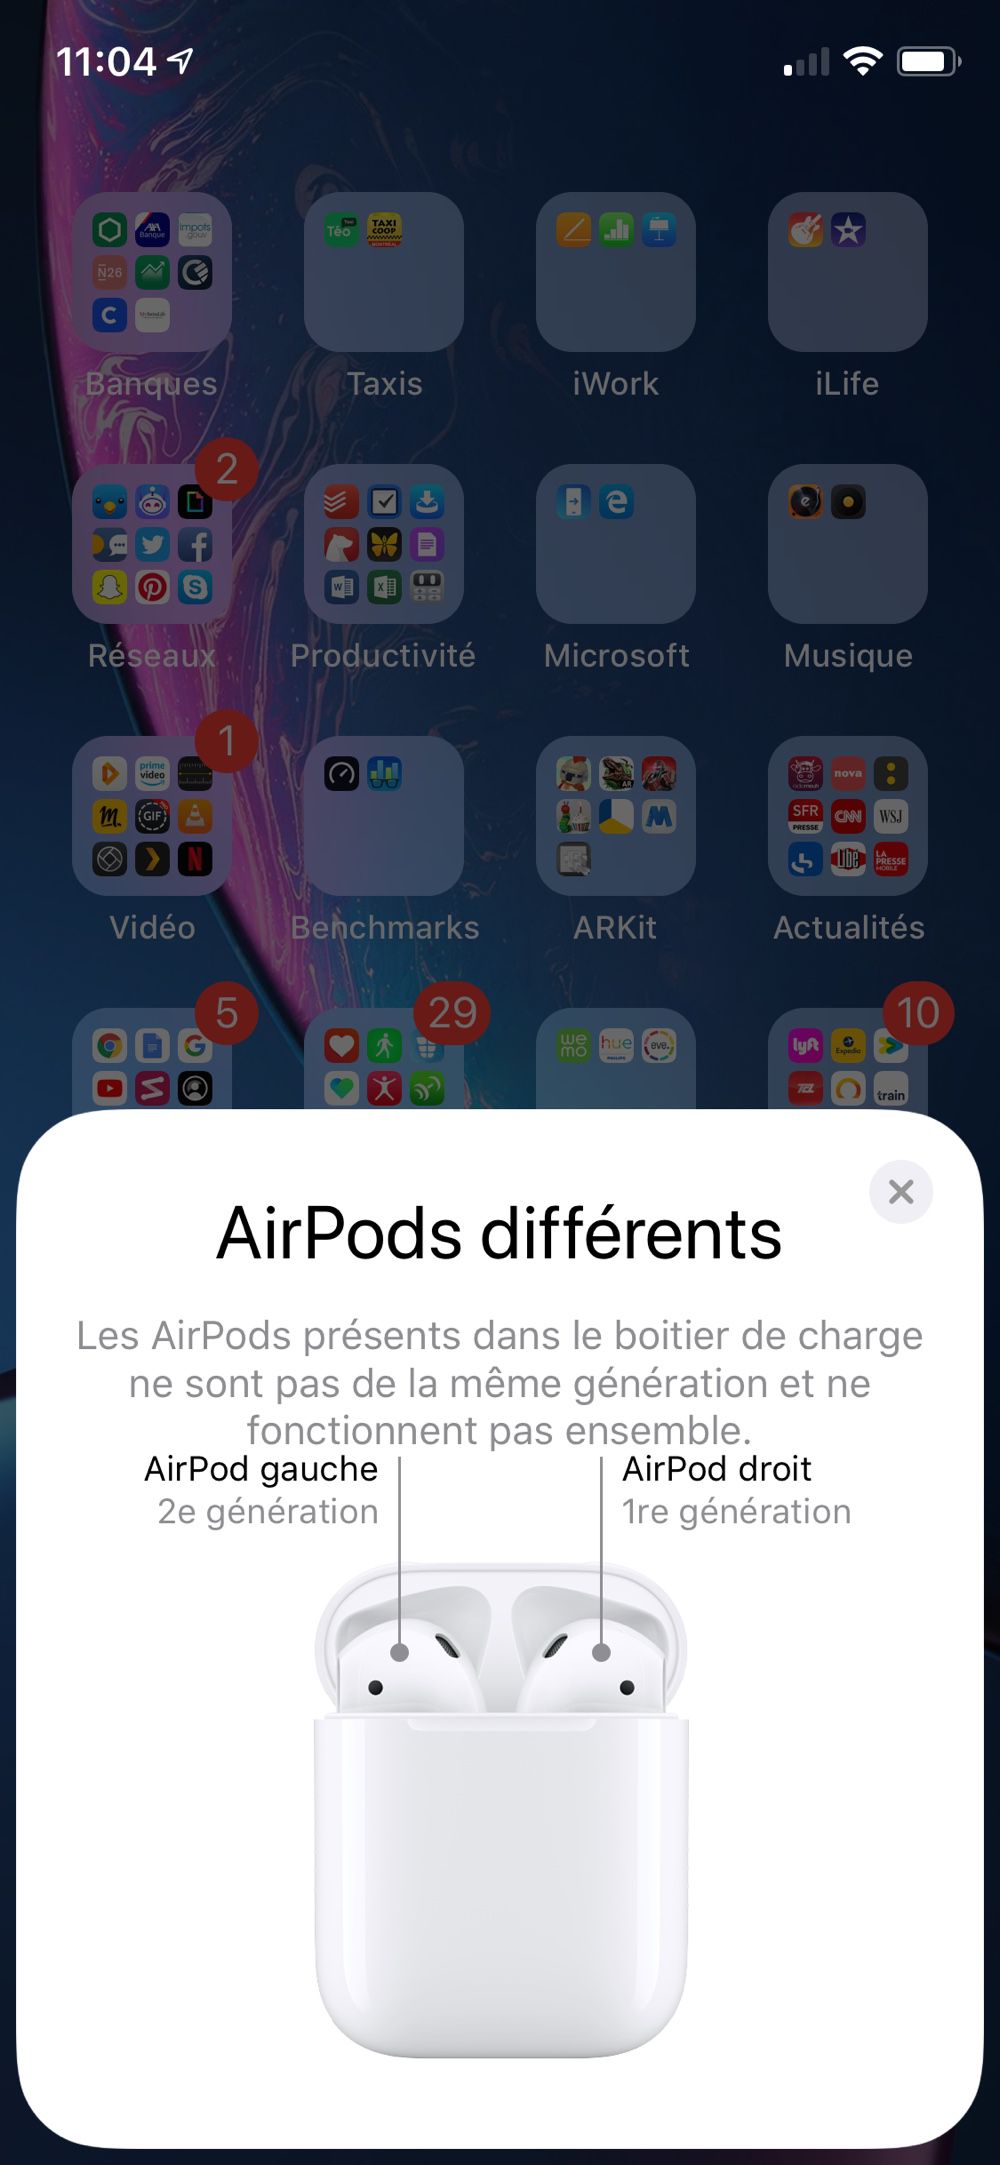 Les 2 générations d'AirPods ne peuvent se charger dans un même boîtier -  Belgium iPhone